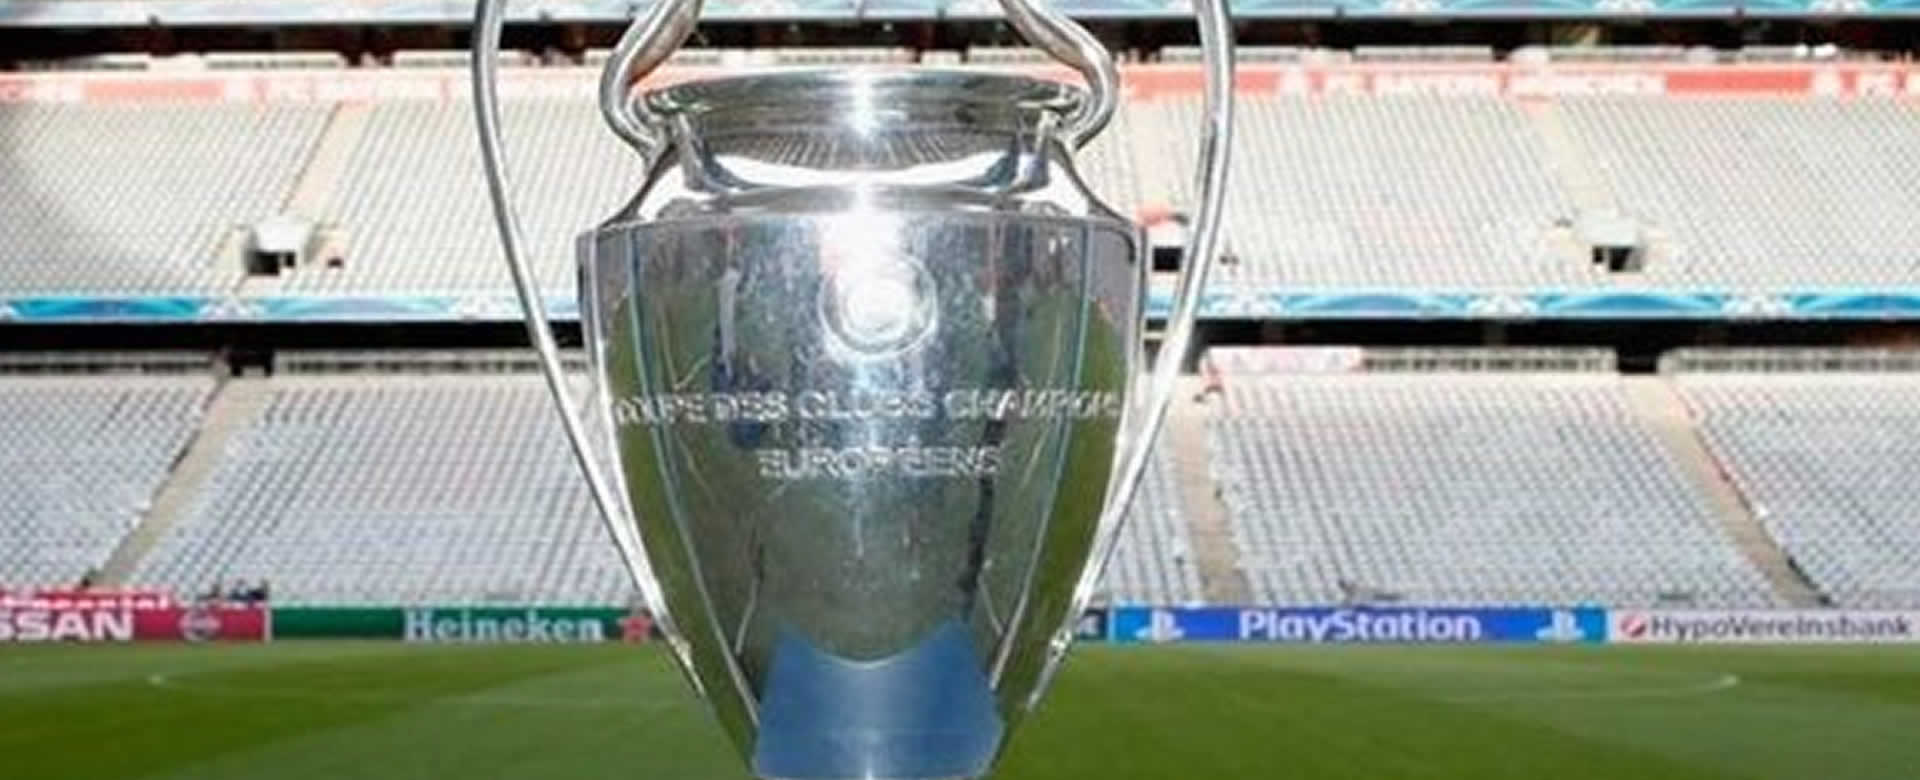 Trofeo oficial de la Champions League 2019-2020.